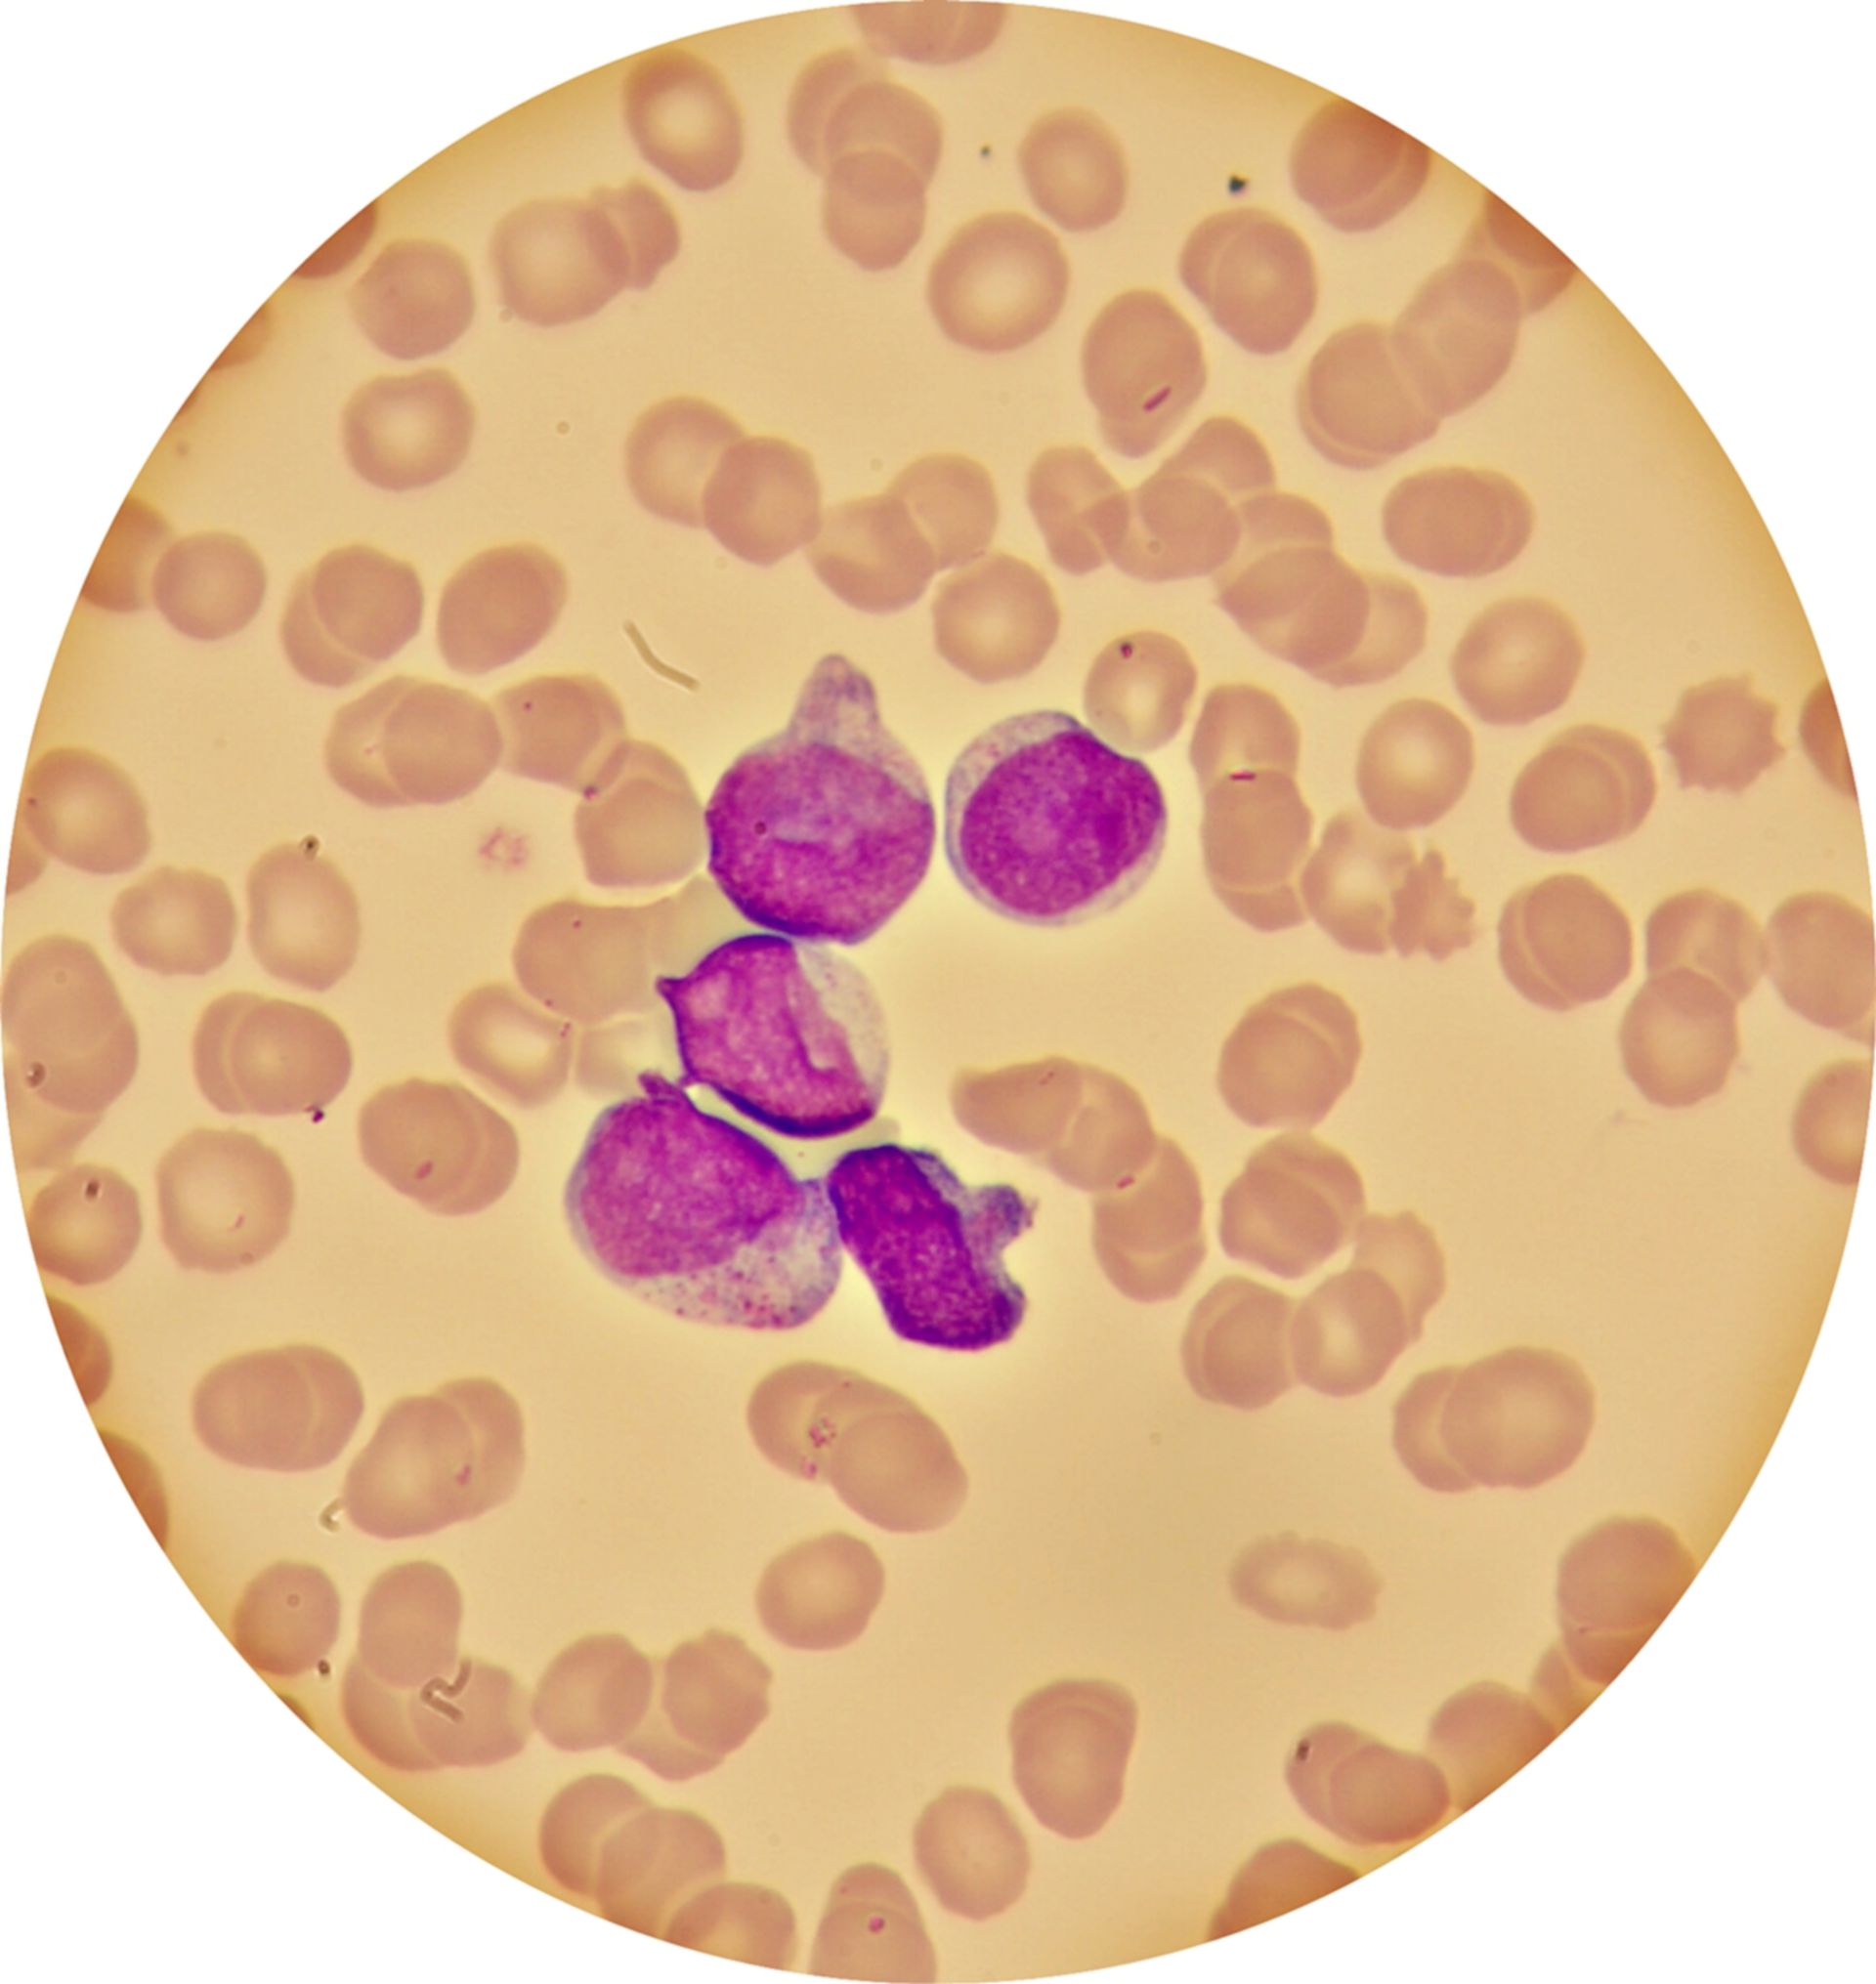 Acute myeloic leukemia - blood smear